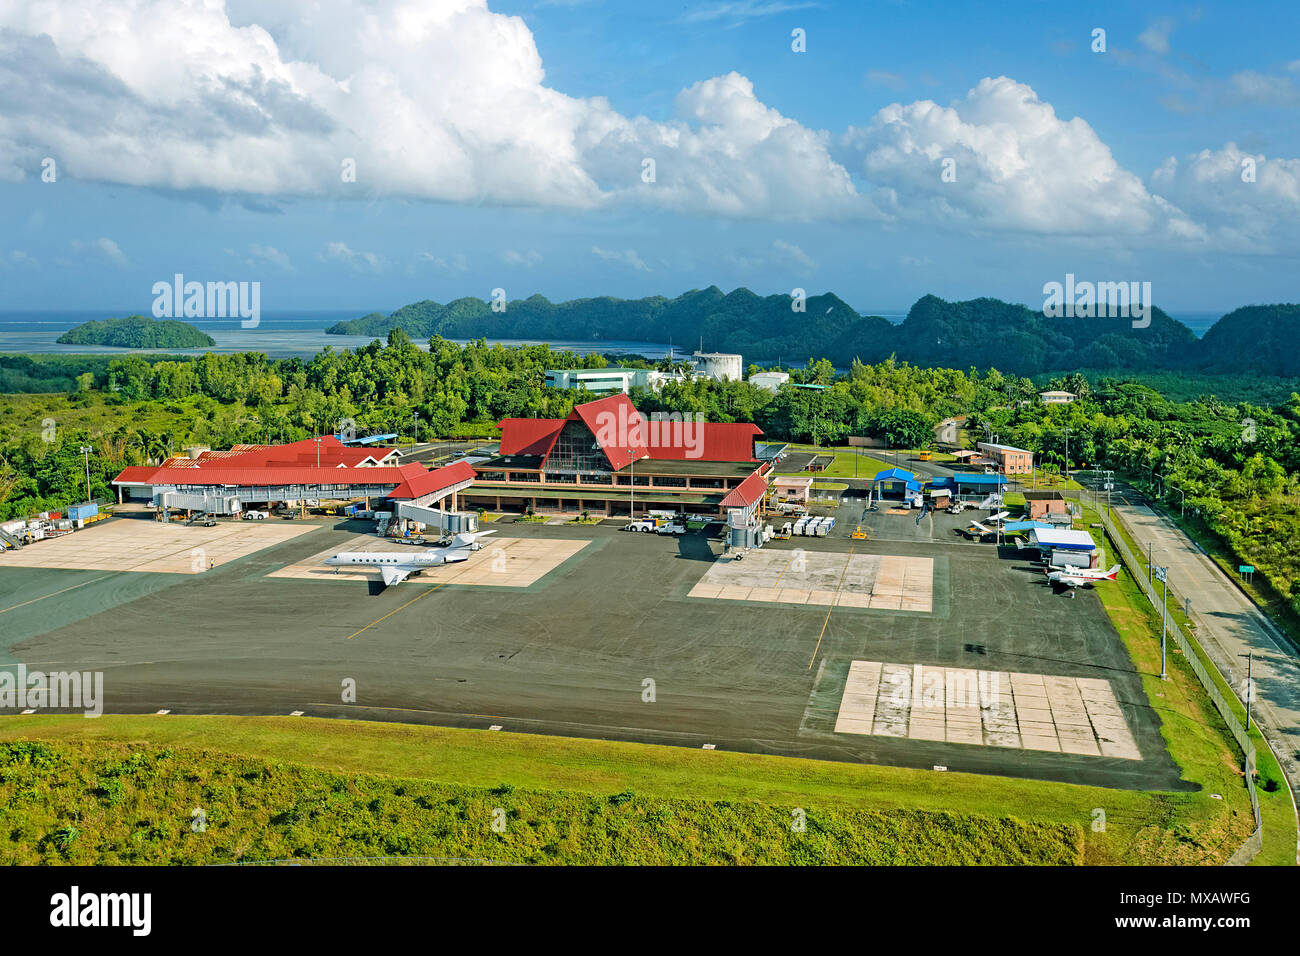 Luftaufnahme vom Flughafen von Palau, Mikronesien, Asien | Flughafen von Palau, Luftaufnahme, Mikronesien, Asien Stockfoto